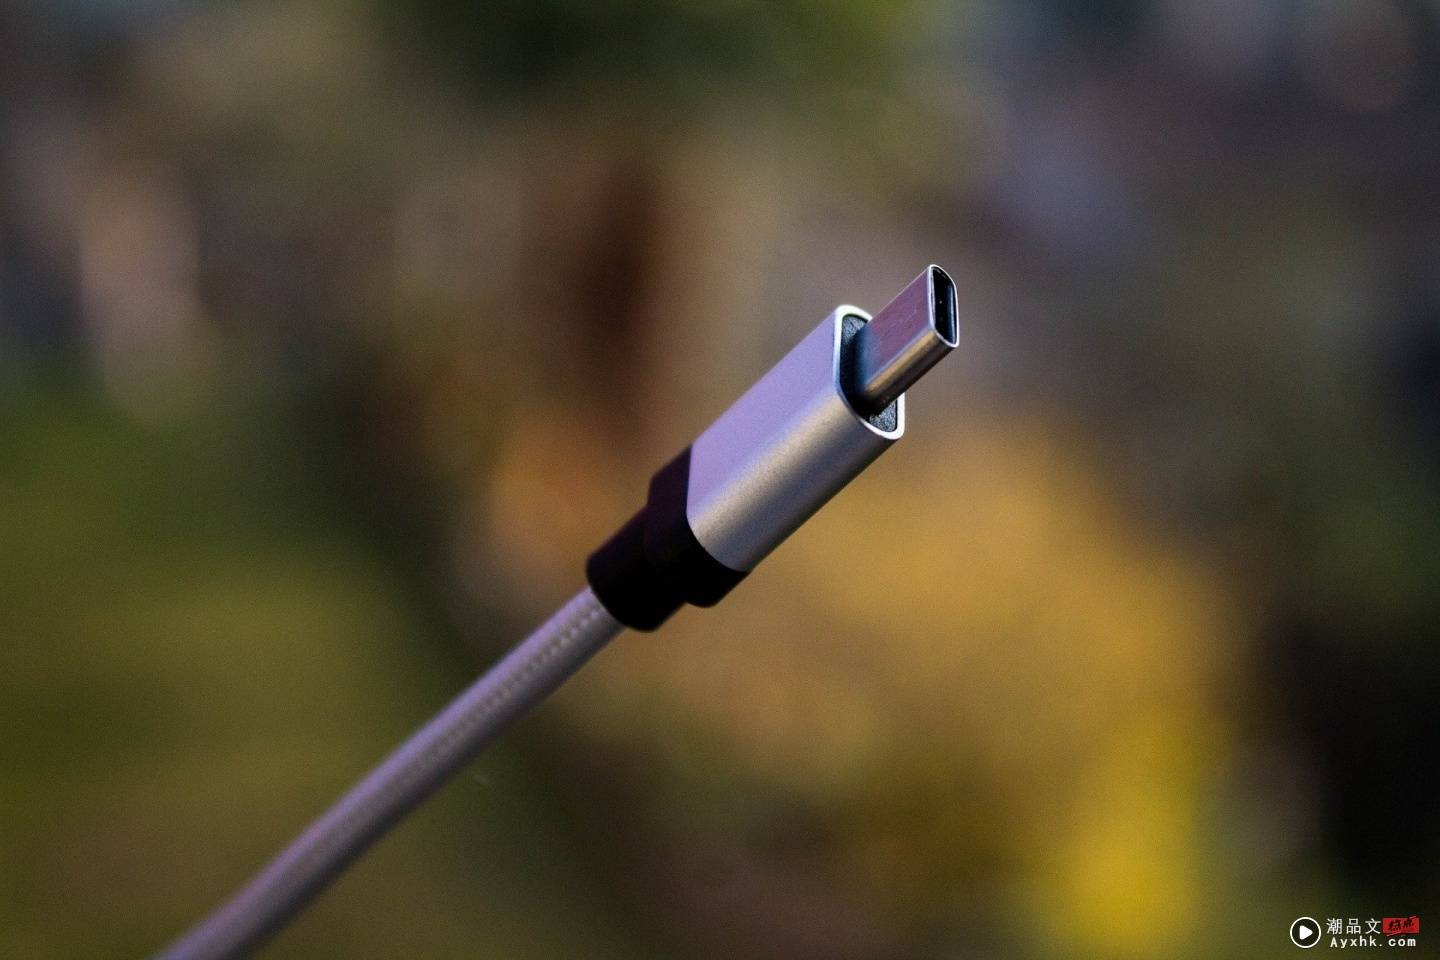 iPhone 的 Lightning 连接埠终于要掰掰了吗？欧盟新提案要求：所有手机都需采用 USB Type-C 来充电 数码科技 图2张